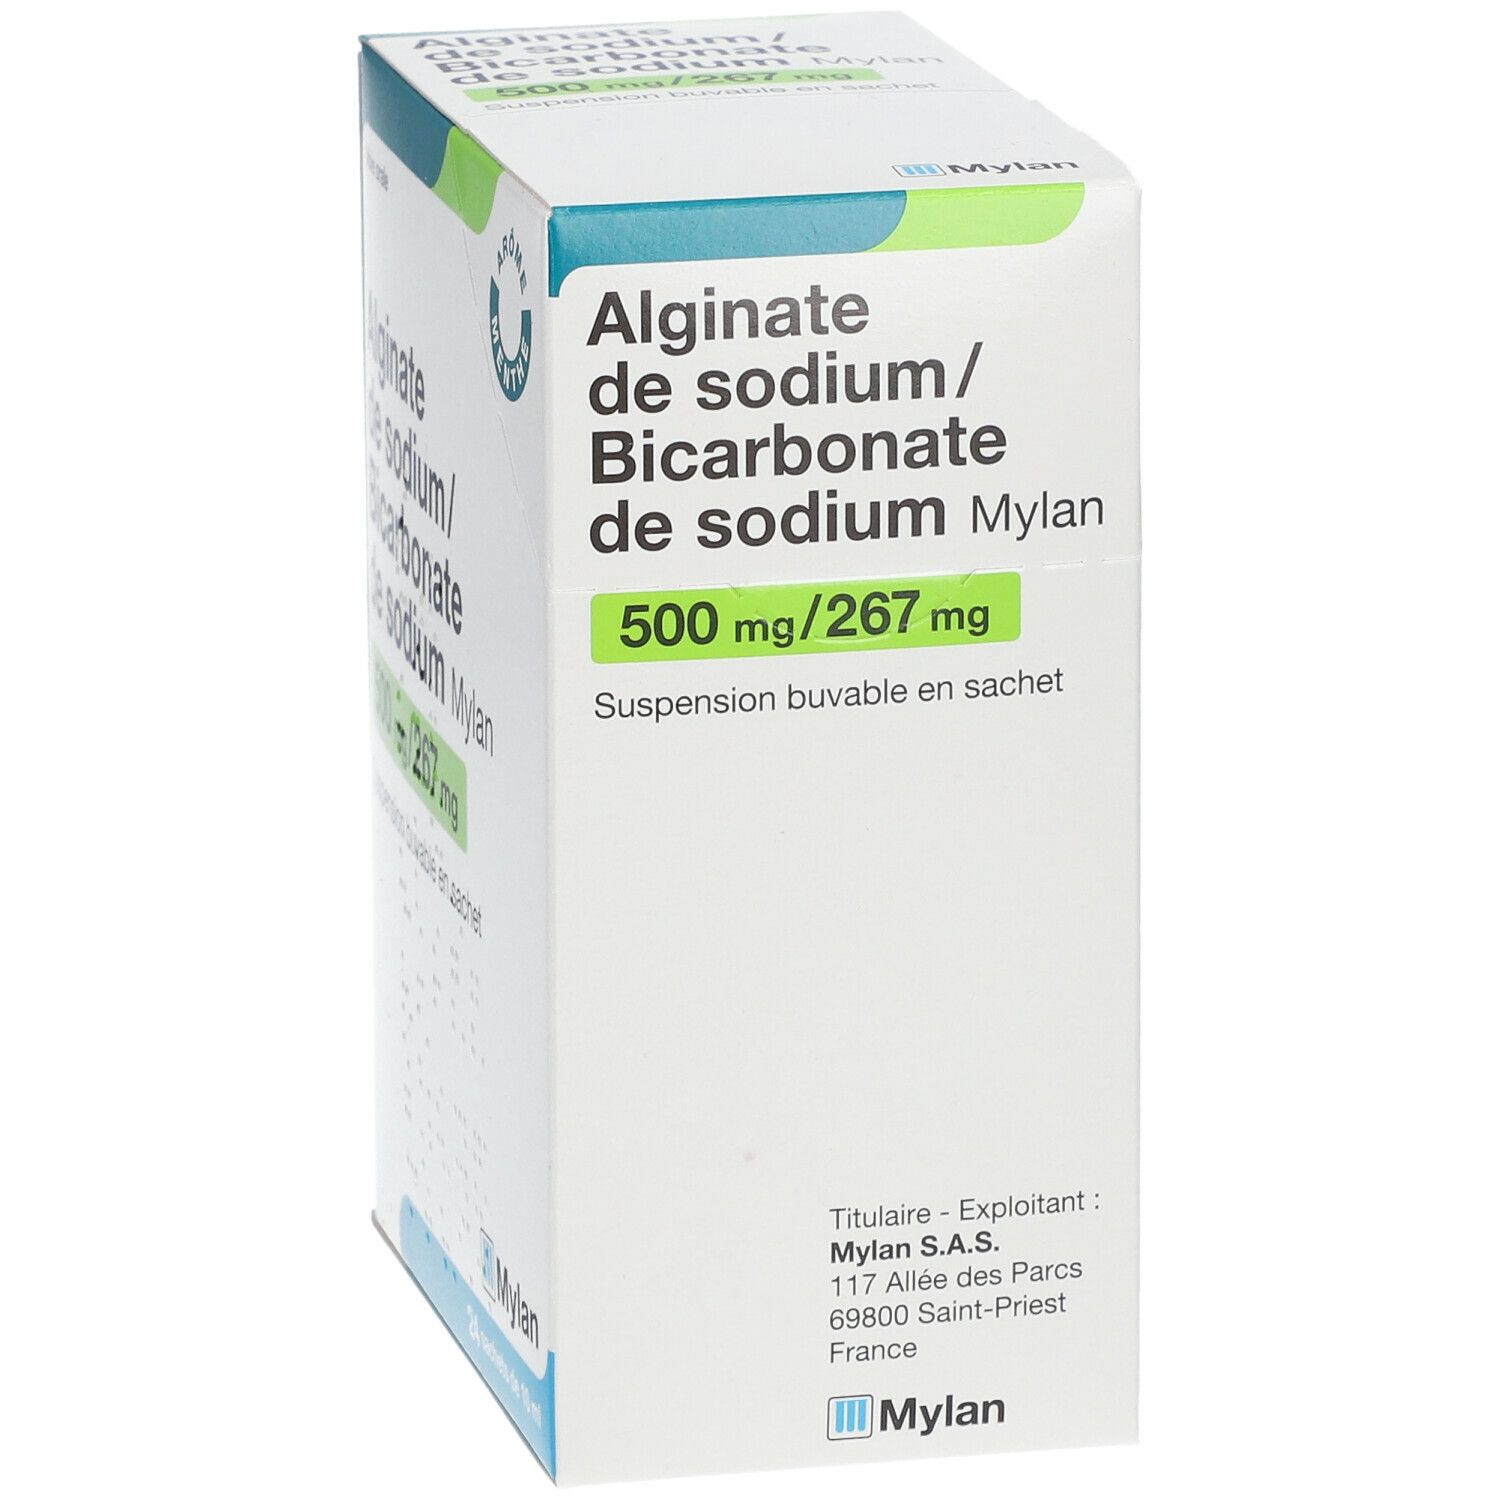 Alginate de Sodium/Bicarbonate de Sodium Mylan Viatris